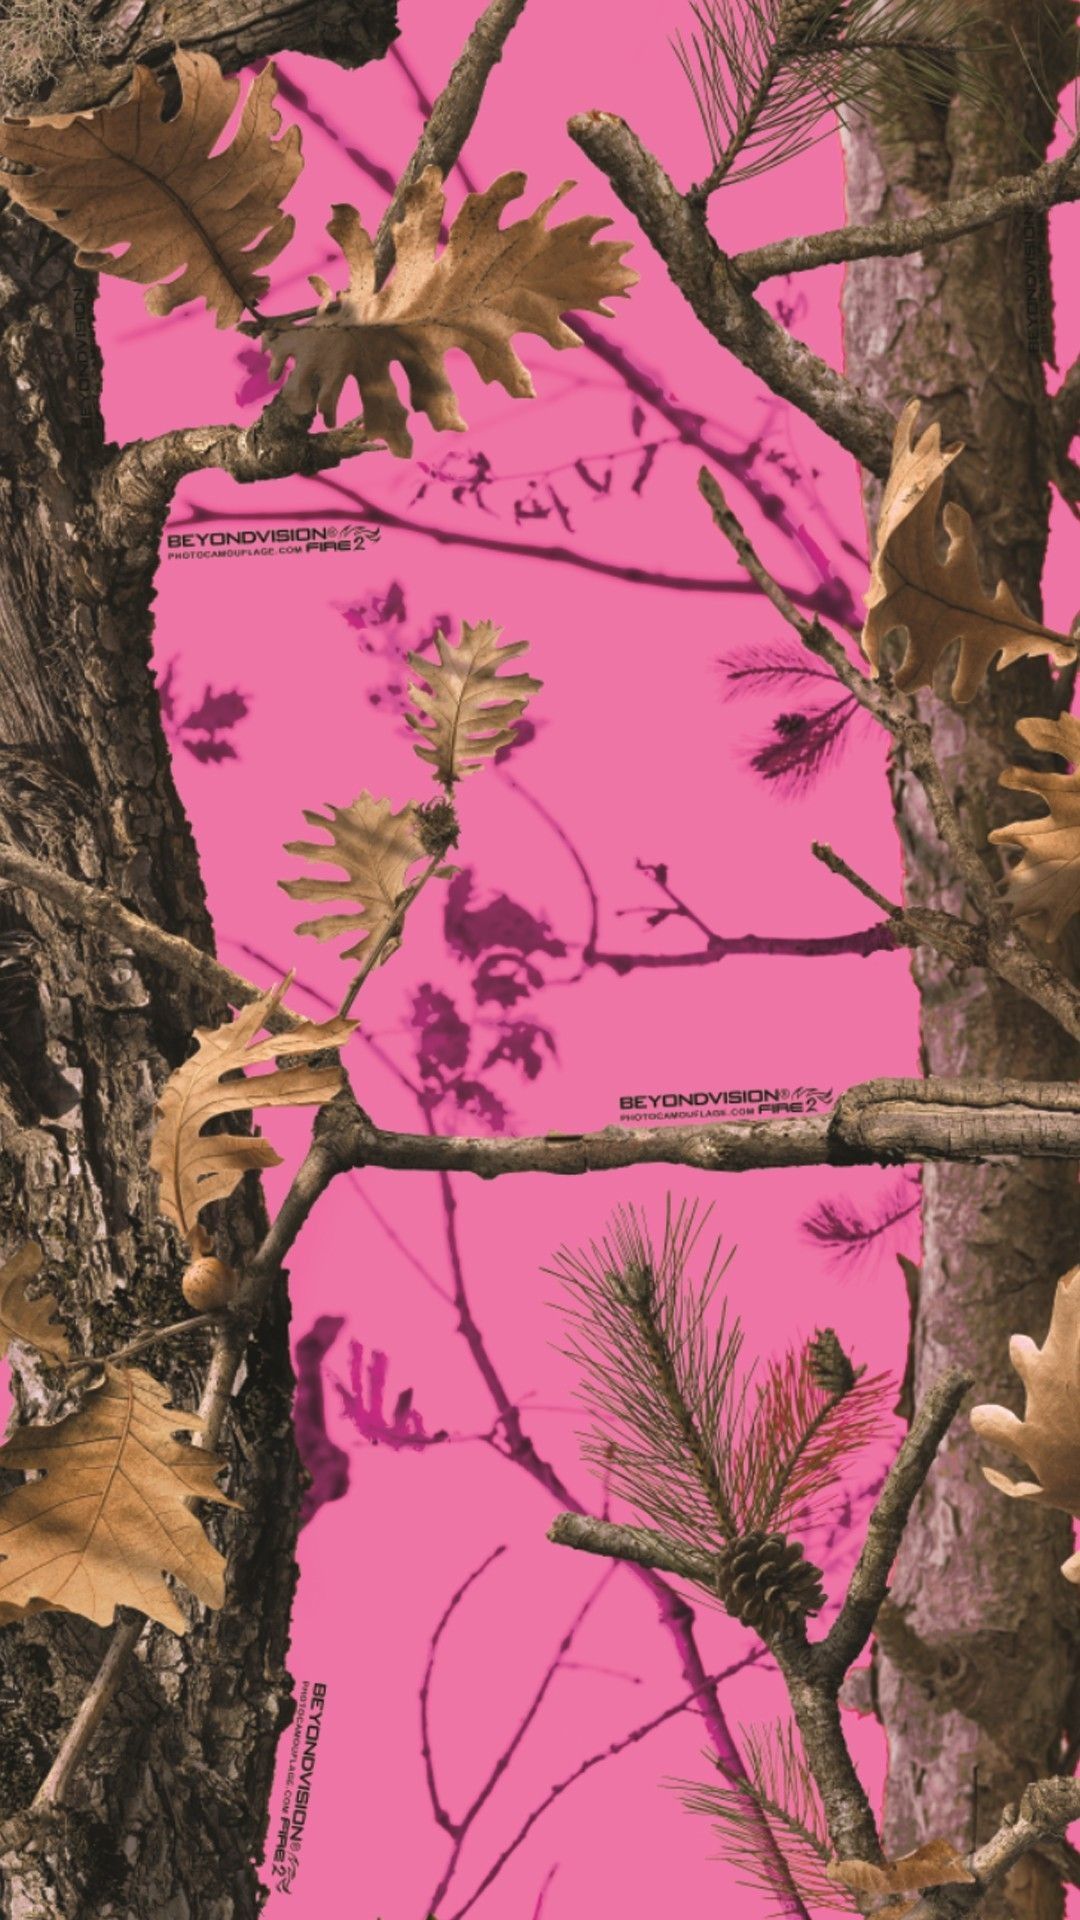 Pink Mossy Oak Wallpaper